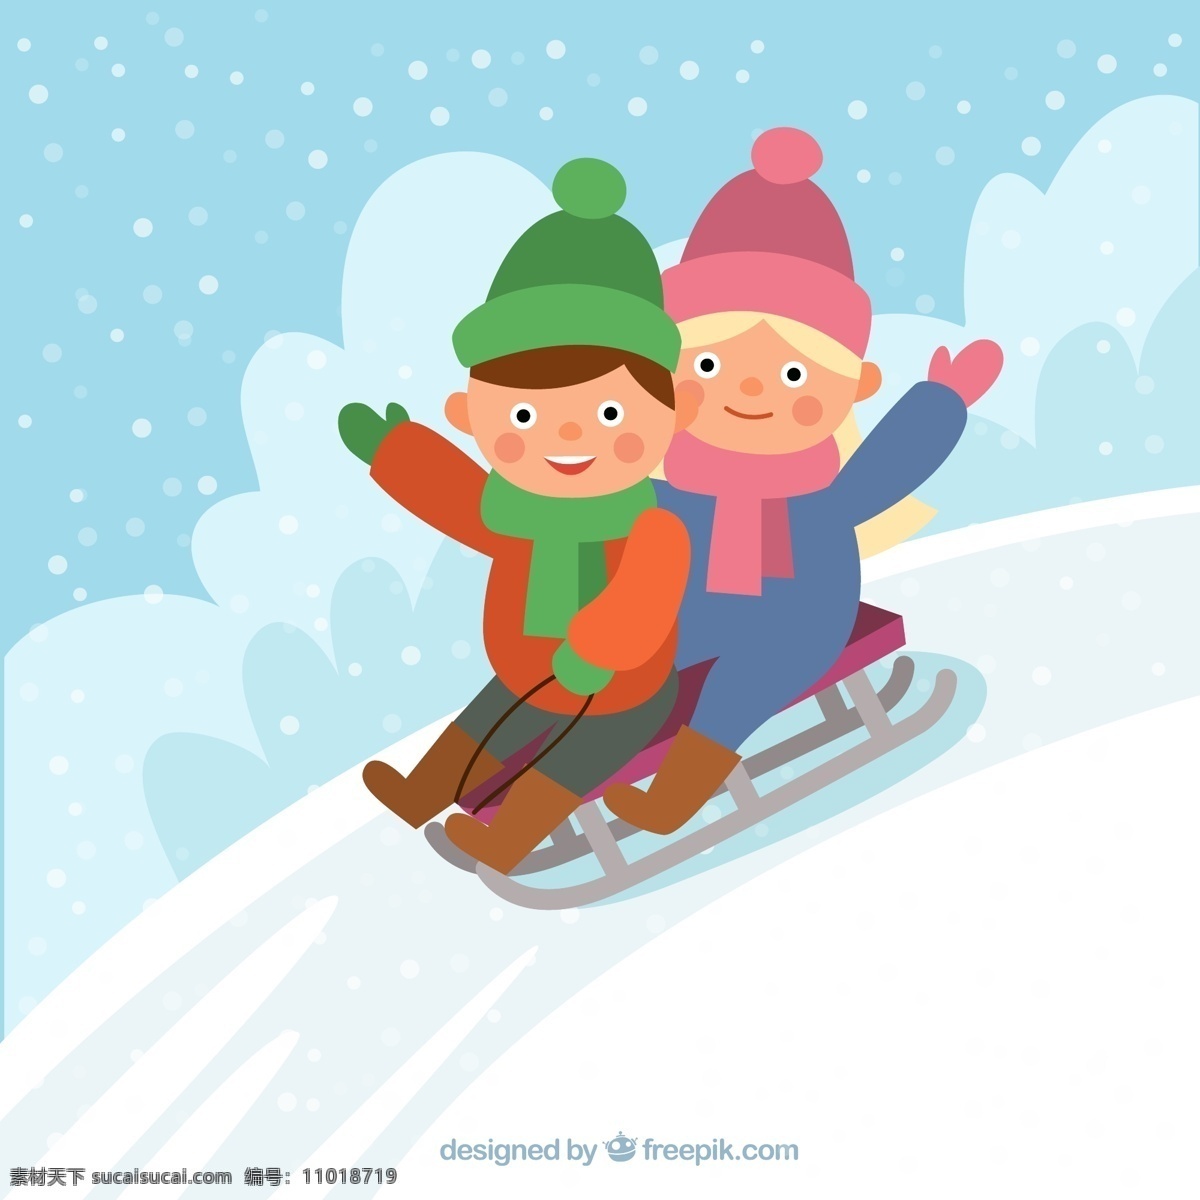 滑雪儿童素材 滑雪 儿童